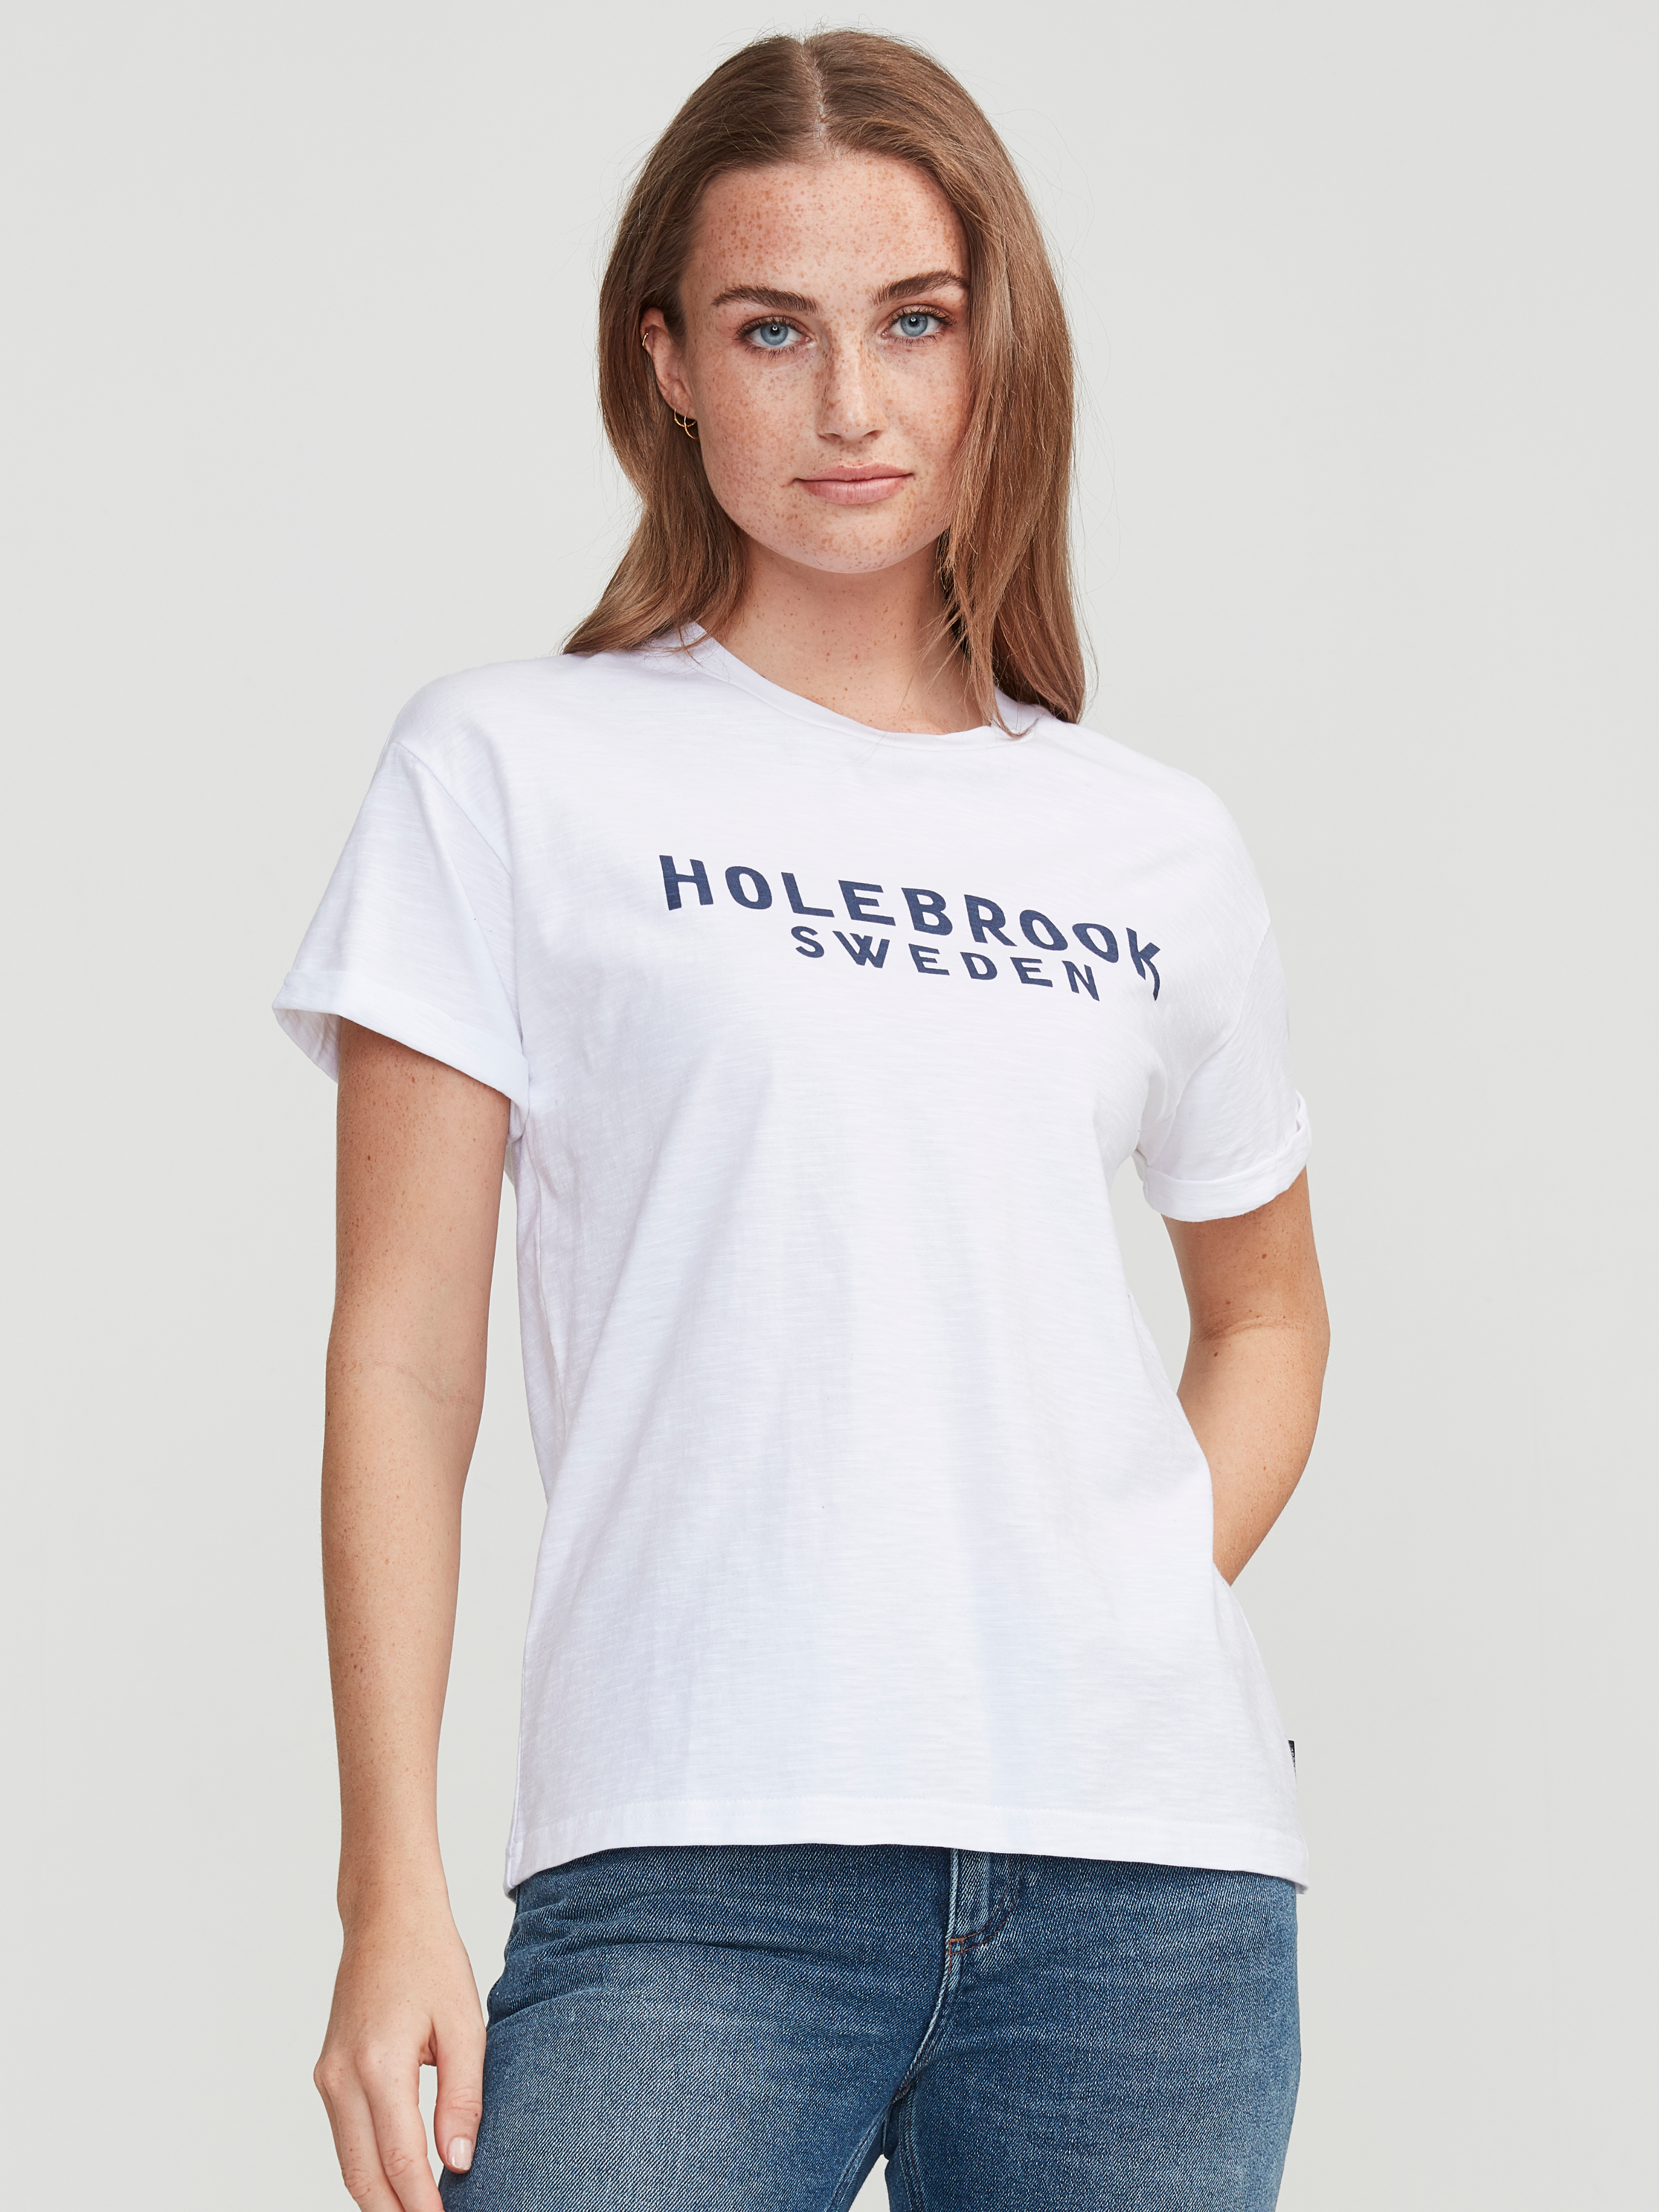 holebrook ann shirt dress